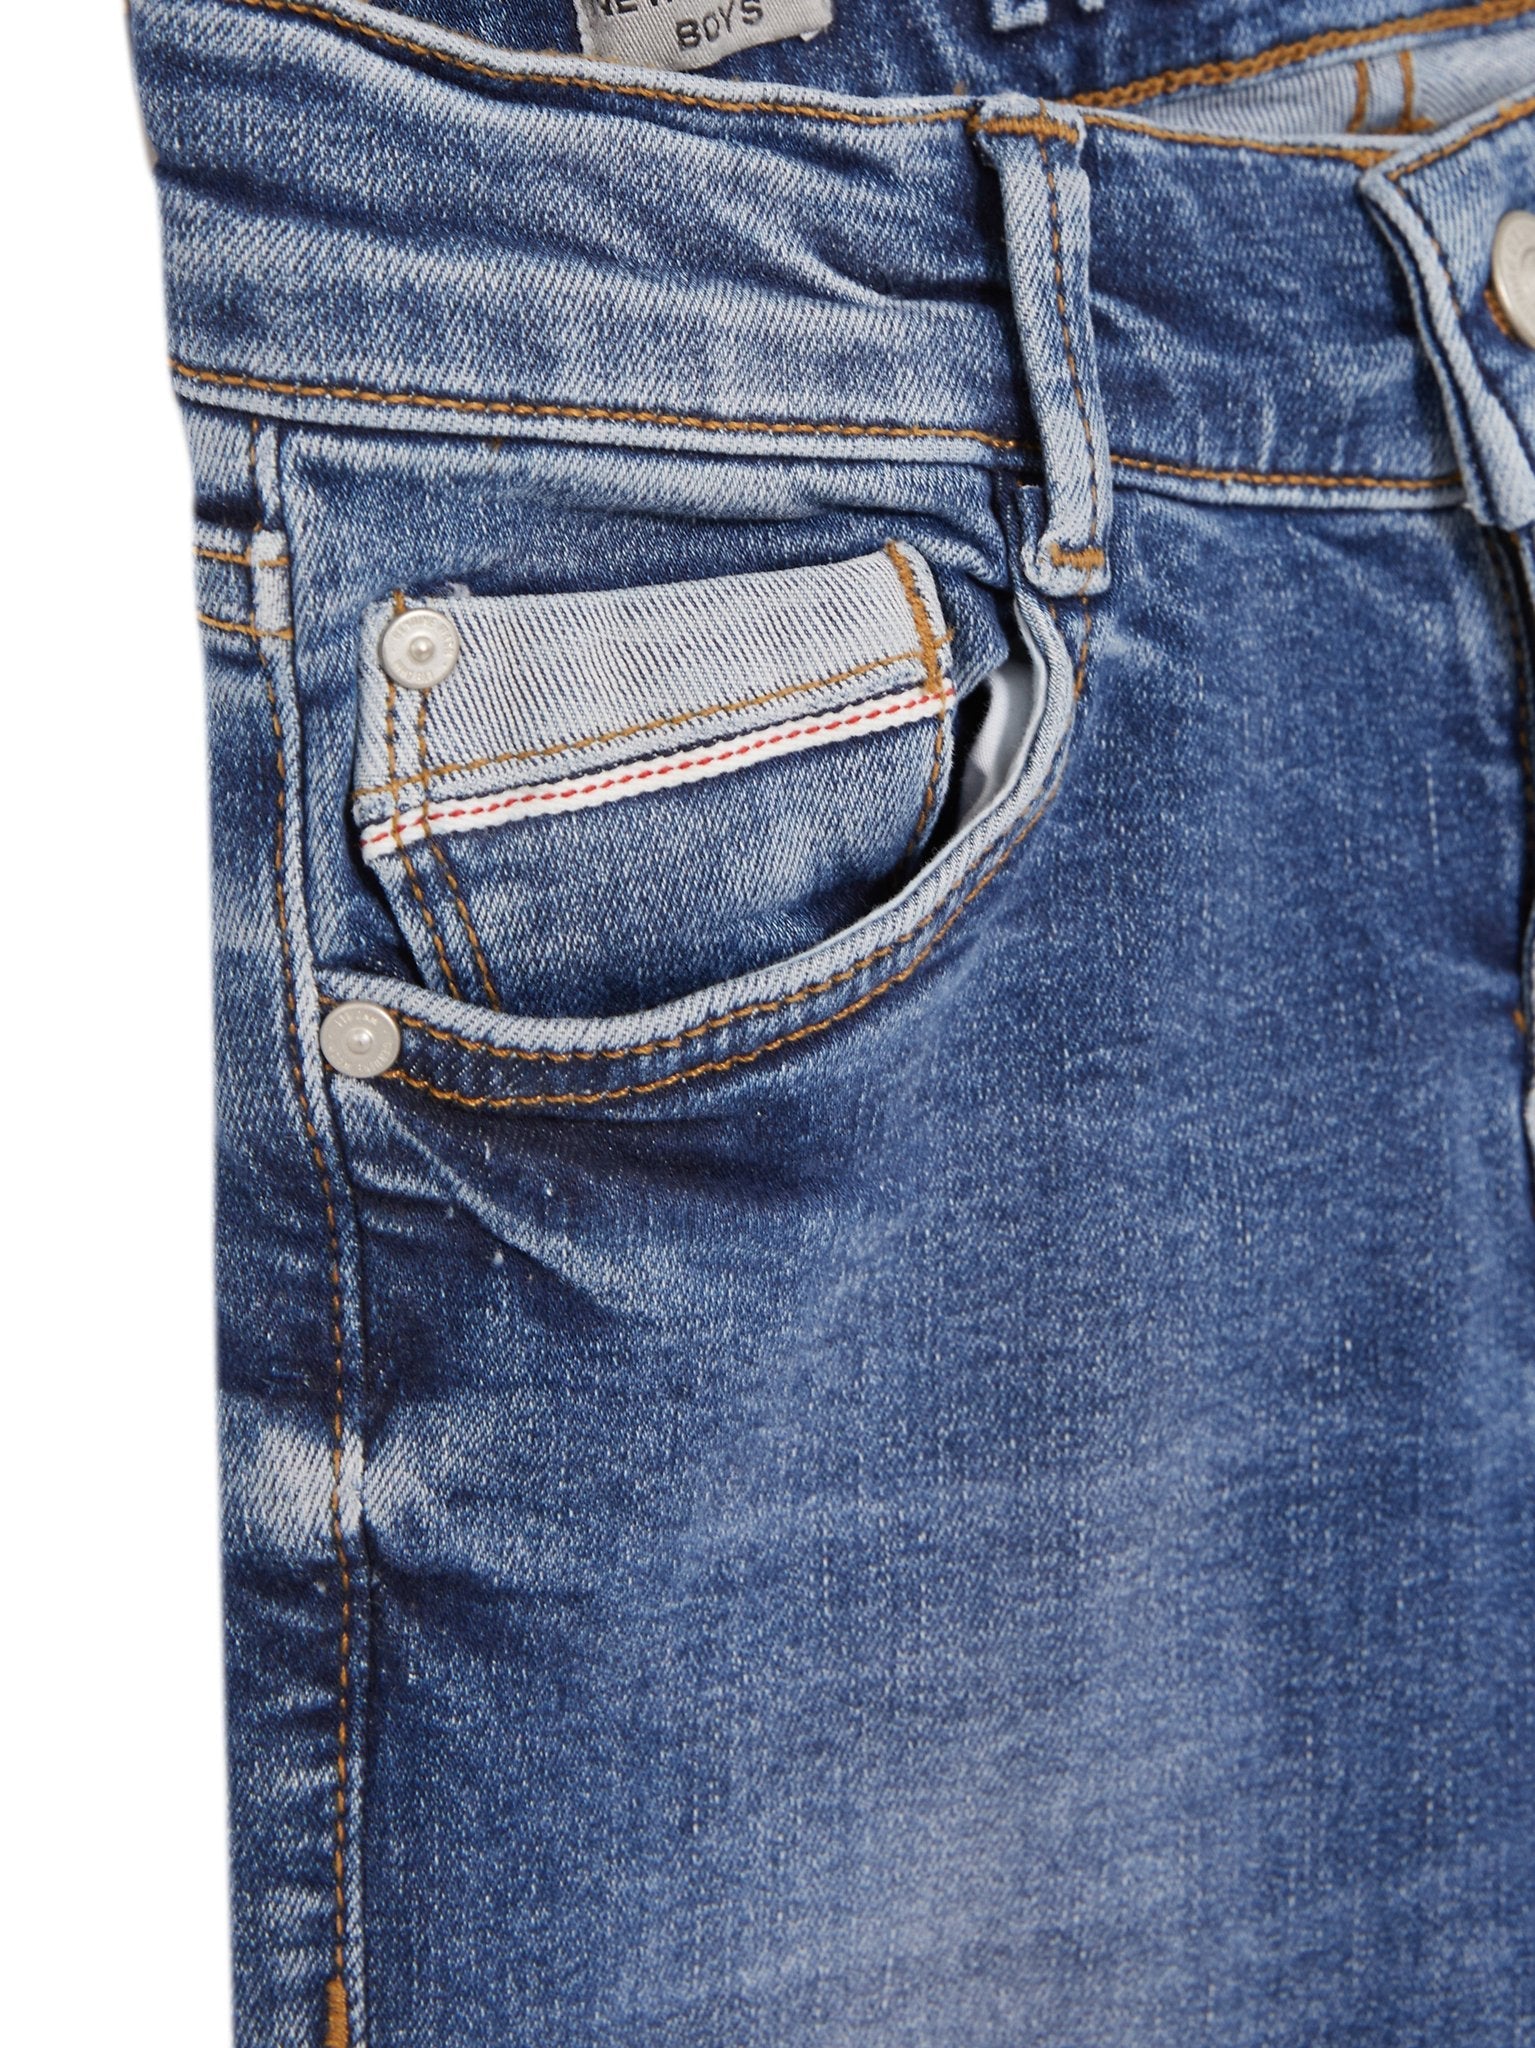 Jongens Jeans NEW COOPER BJUANA WASH van LTB in de kleur JUANA WASH in maat 176.